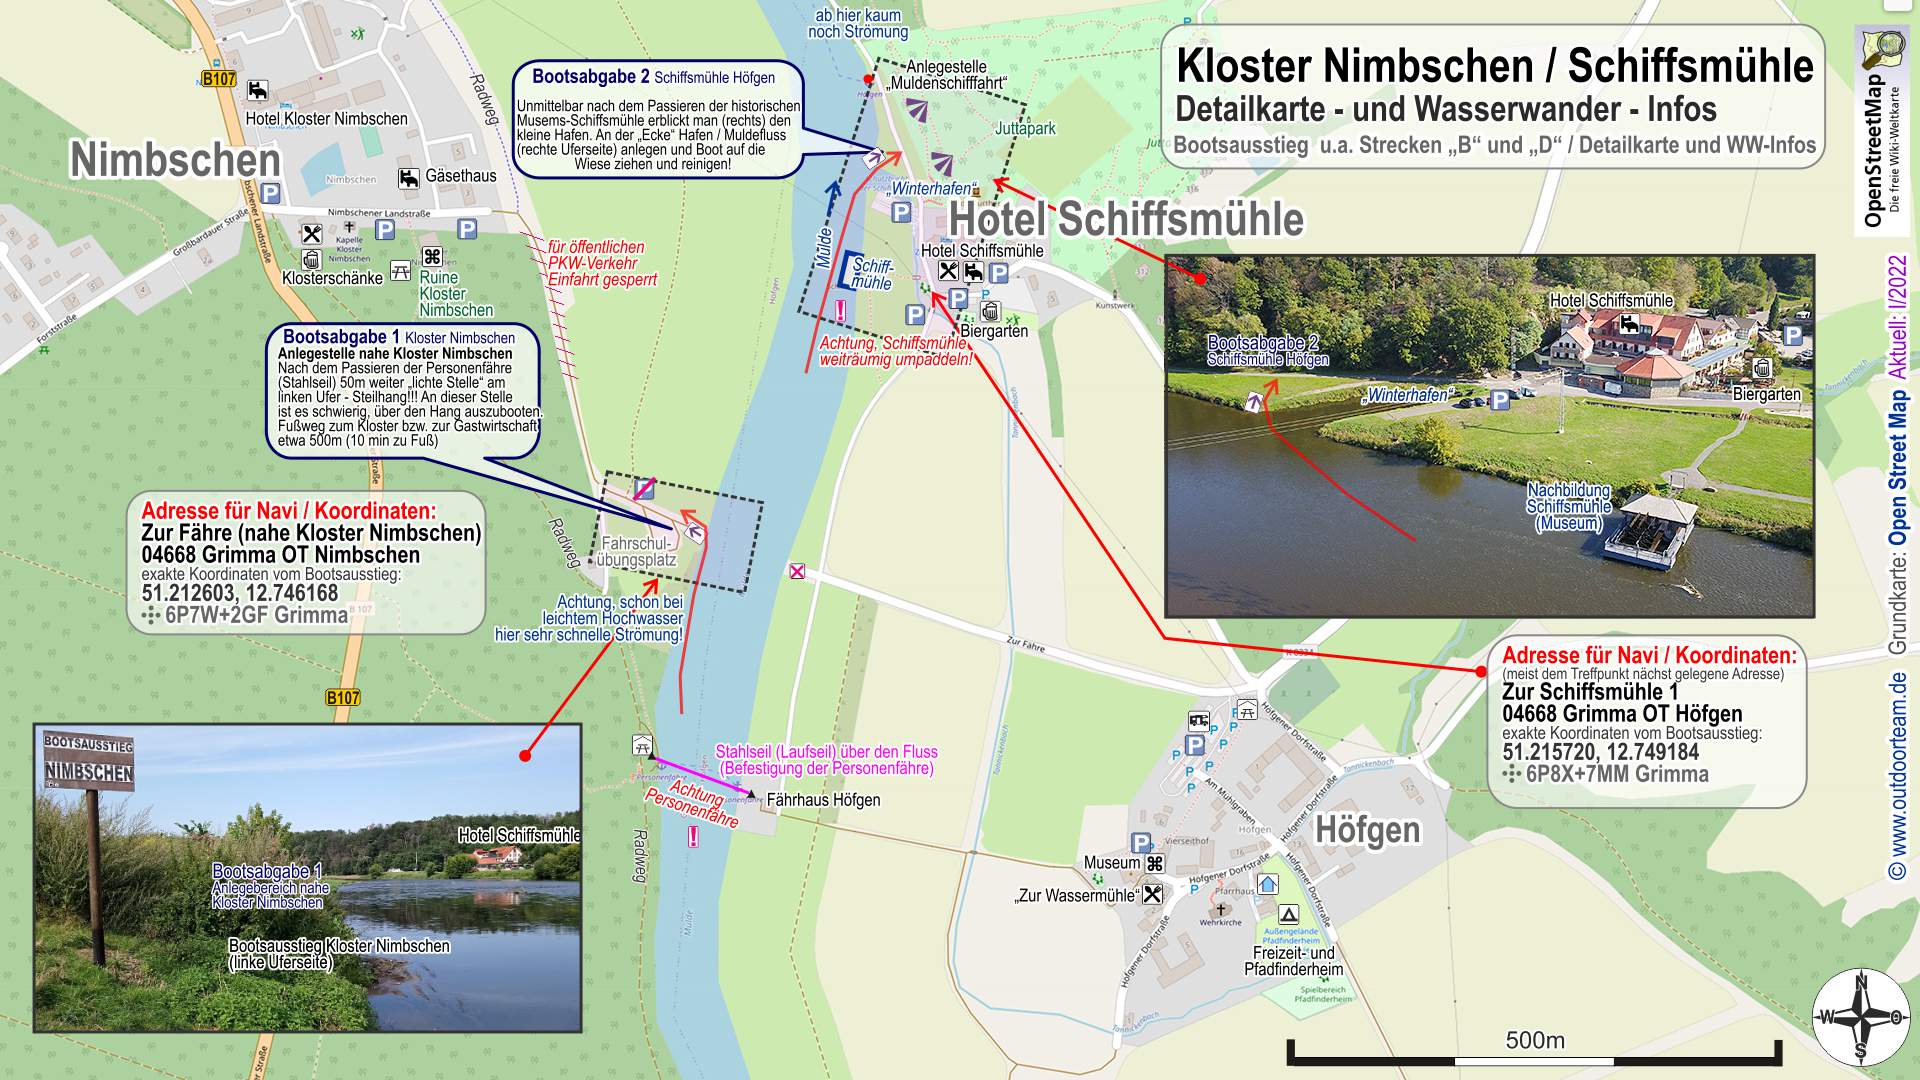 Detailkarte und Wasserwander-Info Bootsausstieg Kloster Nimbschen und Schiffsmühle Höfgen am Mulde - Fluss